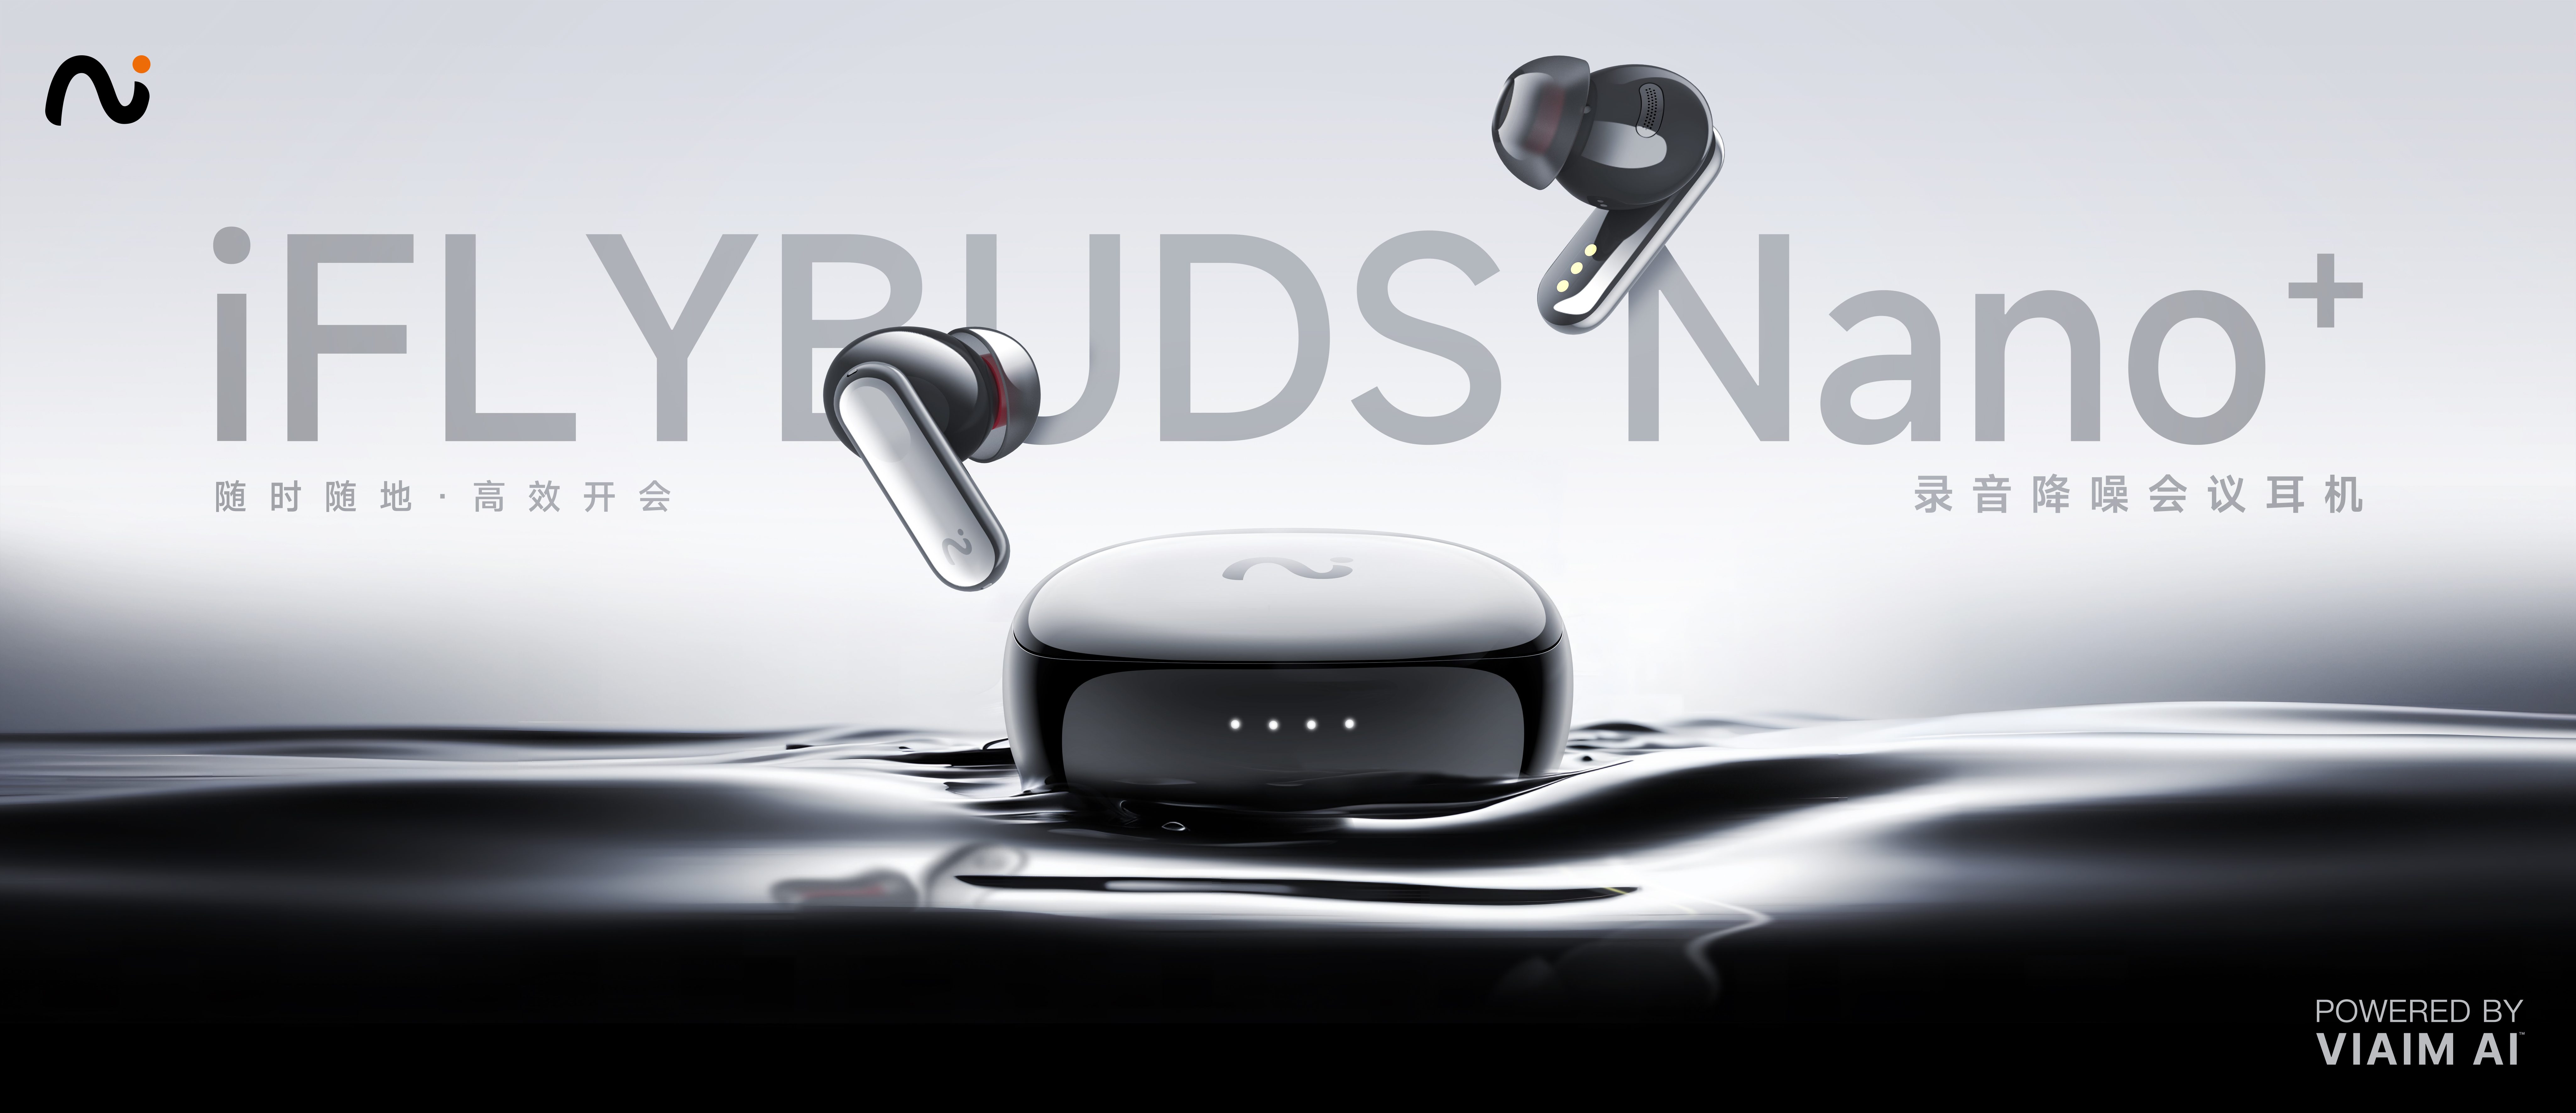 未来智能发布全新录音降噪会议耳机iFLYBUDS Nano系列